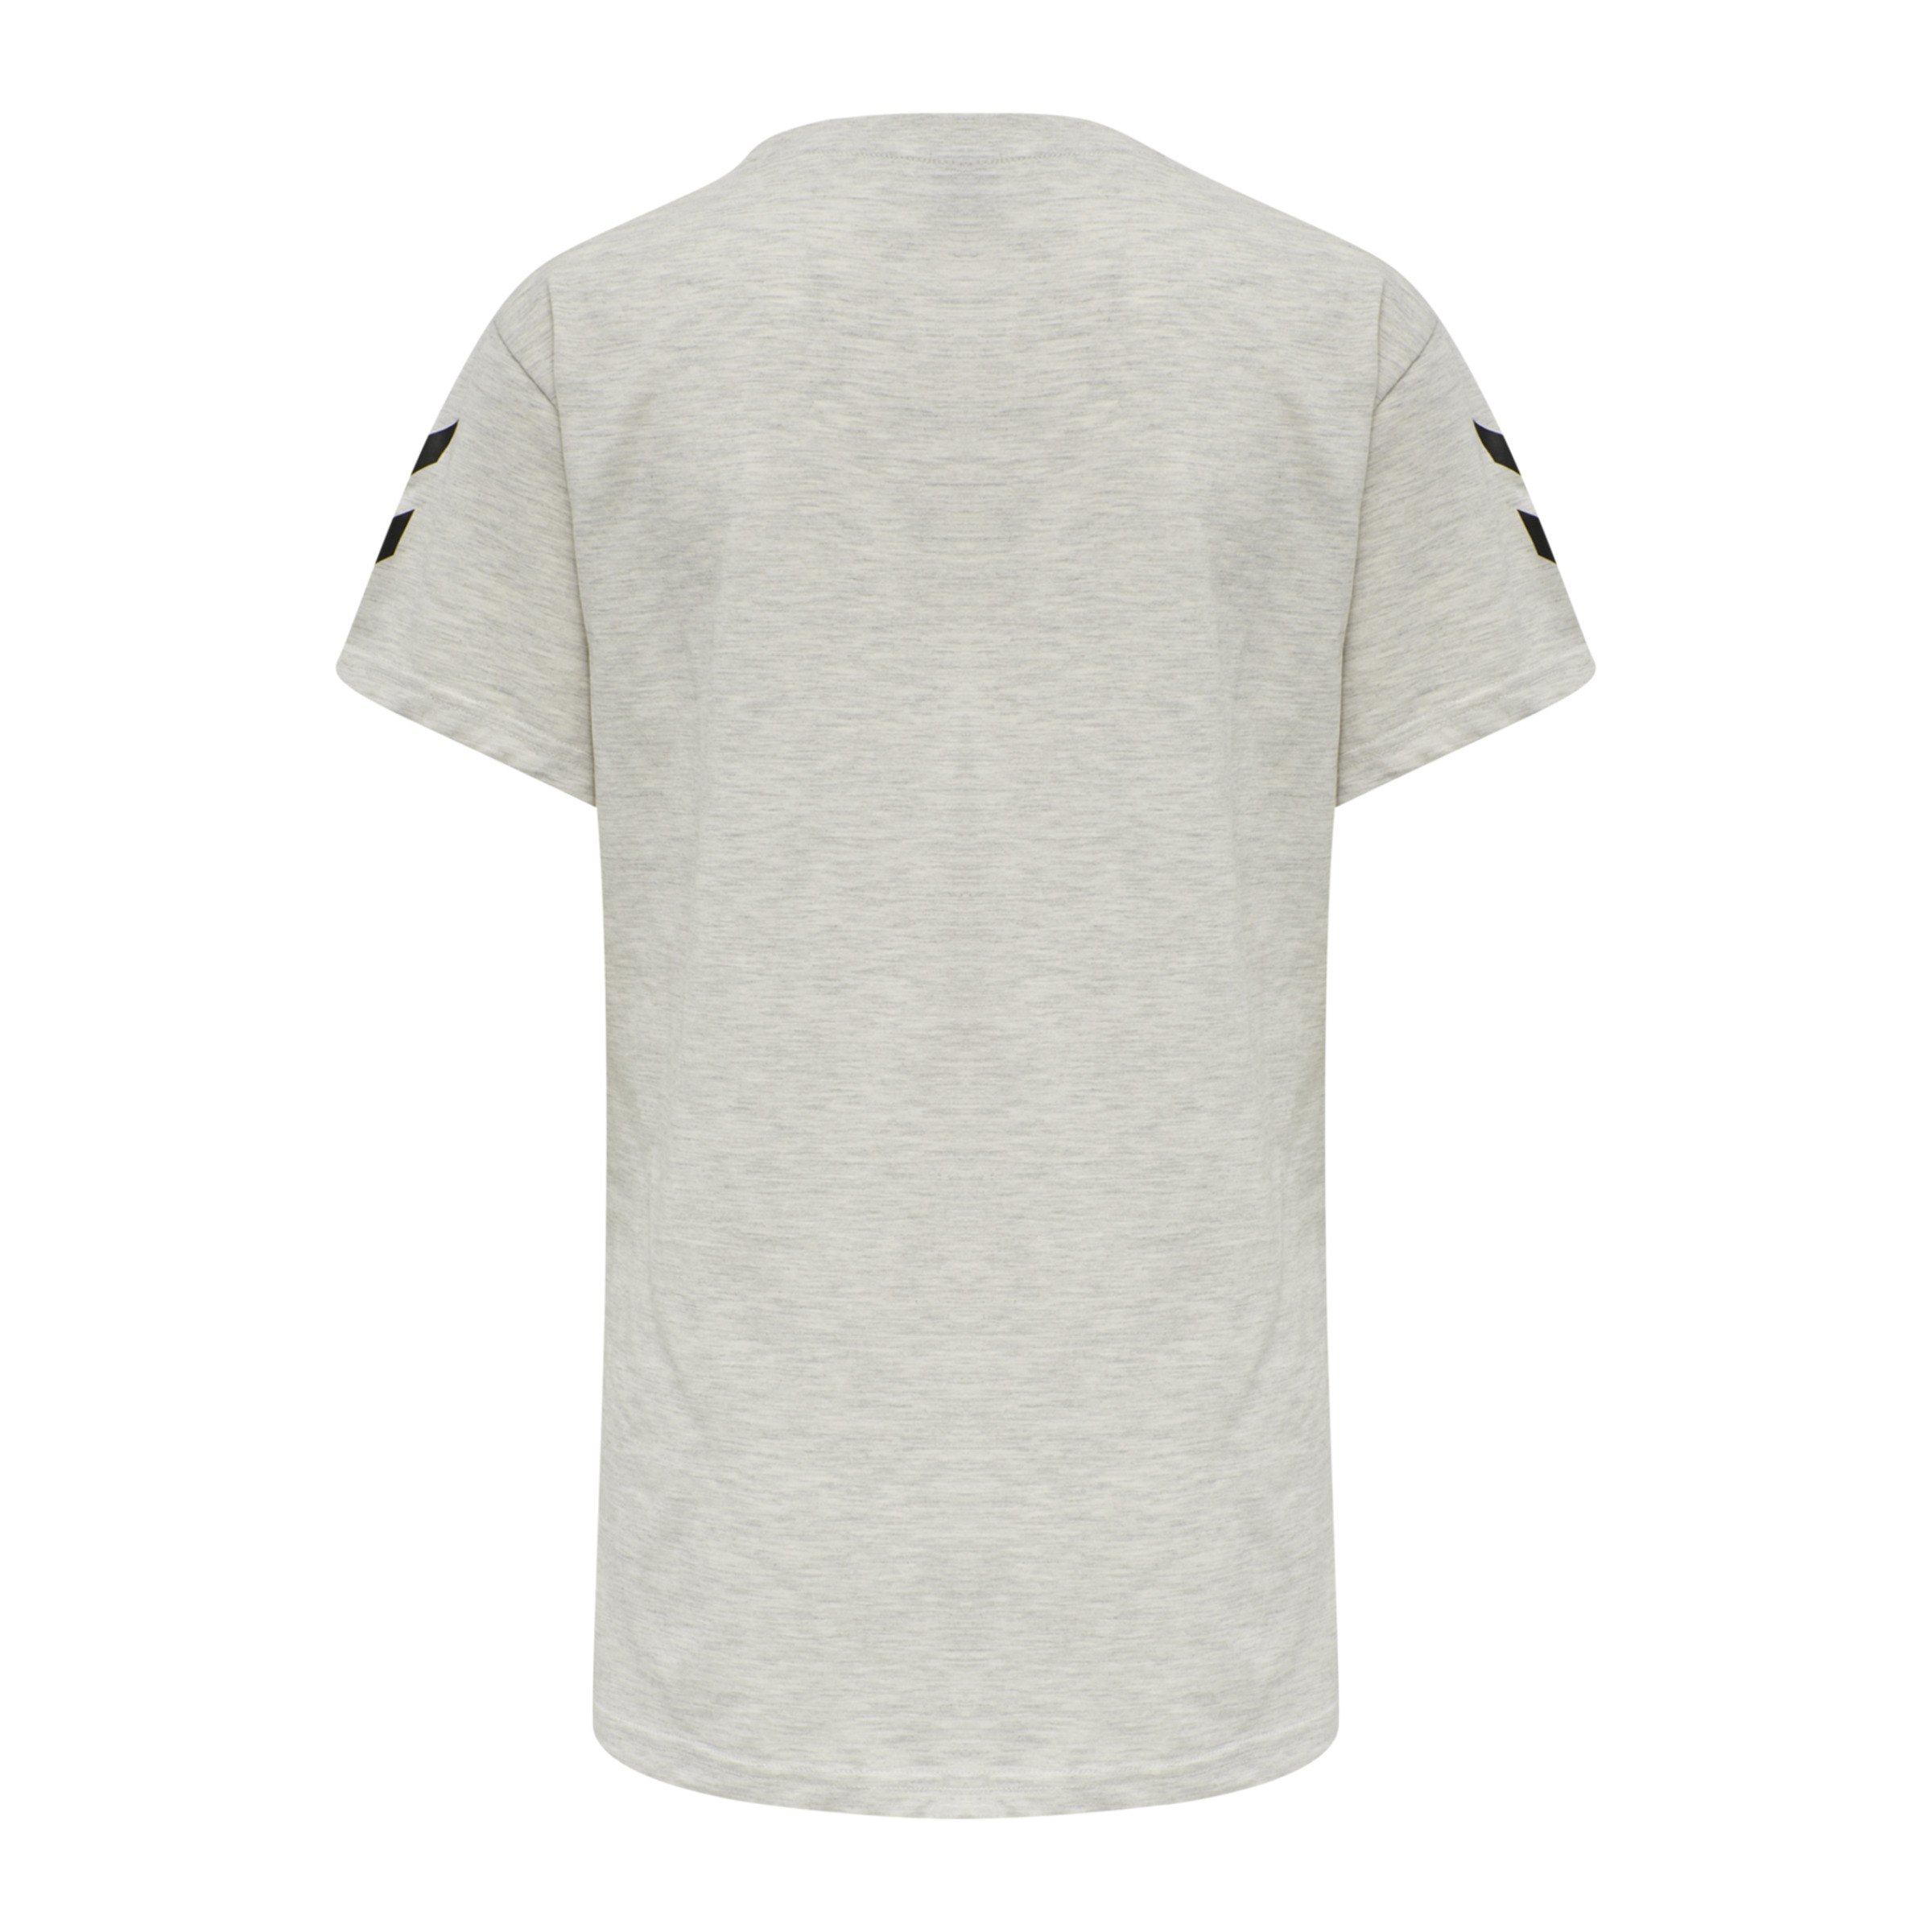 Hummel Cotton T-Shirt Damen Grau F9158 beige